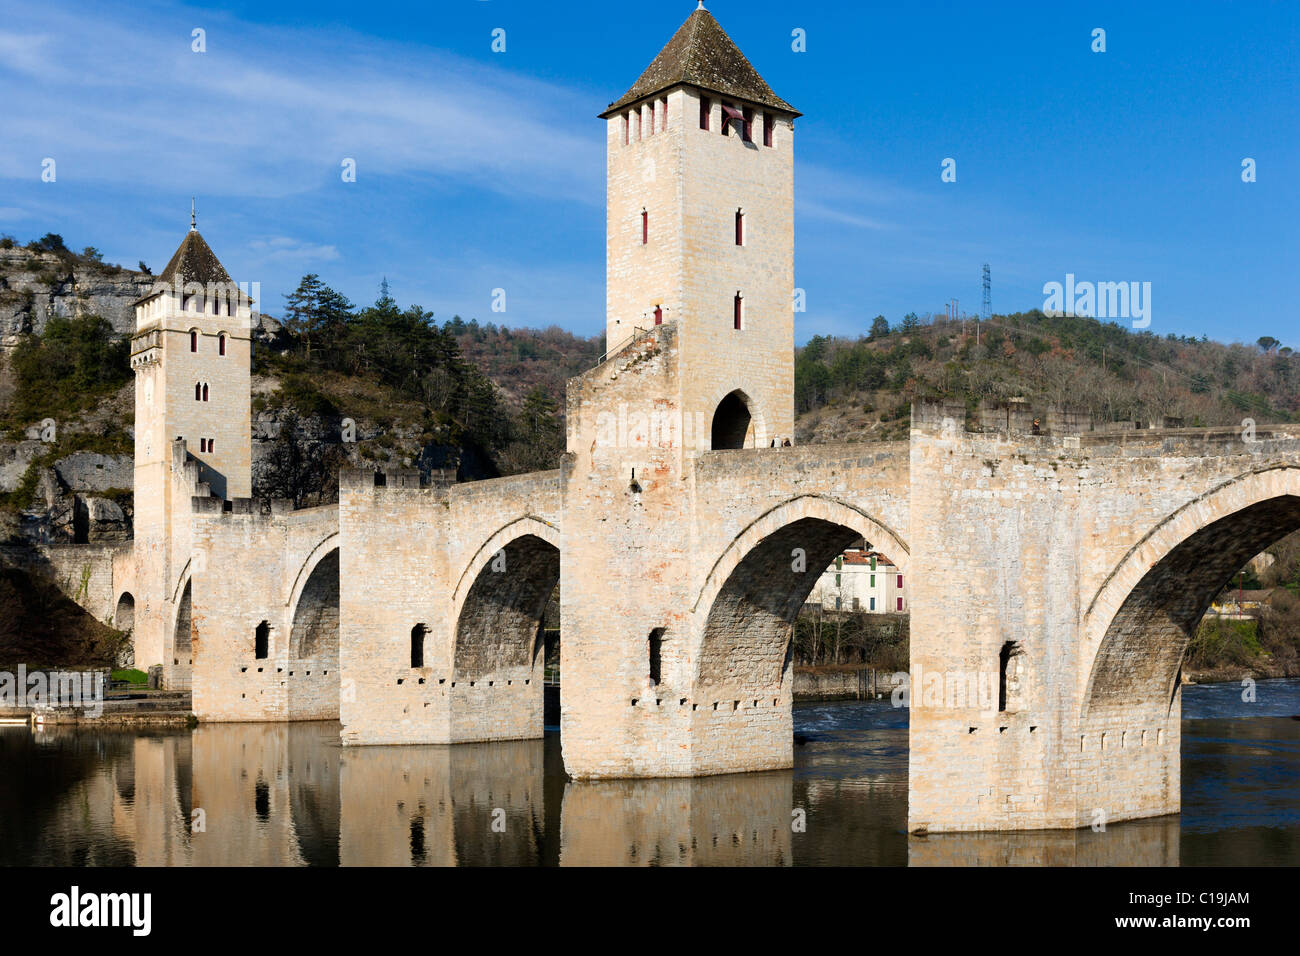 Le Pont Valentre médiévale sur la rivière Lot, Cahors, Lot, France Banque D'Images